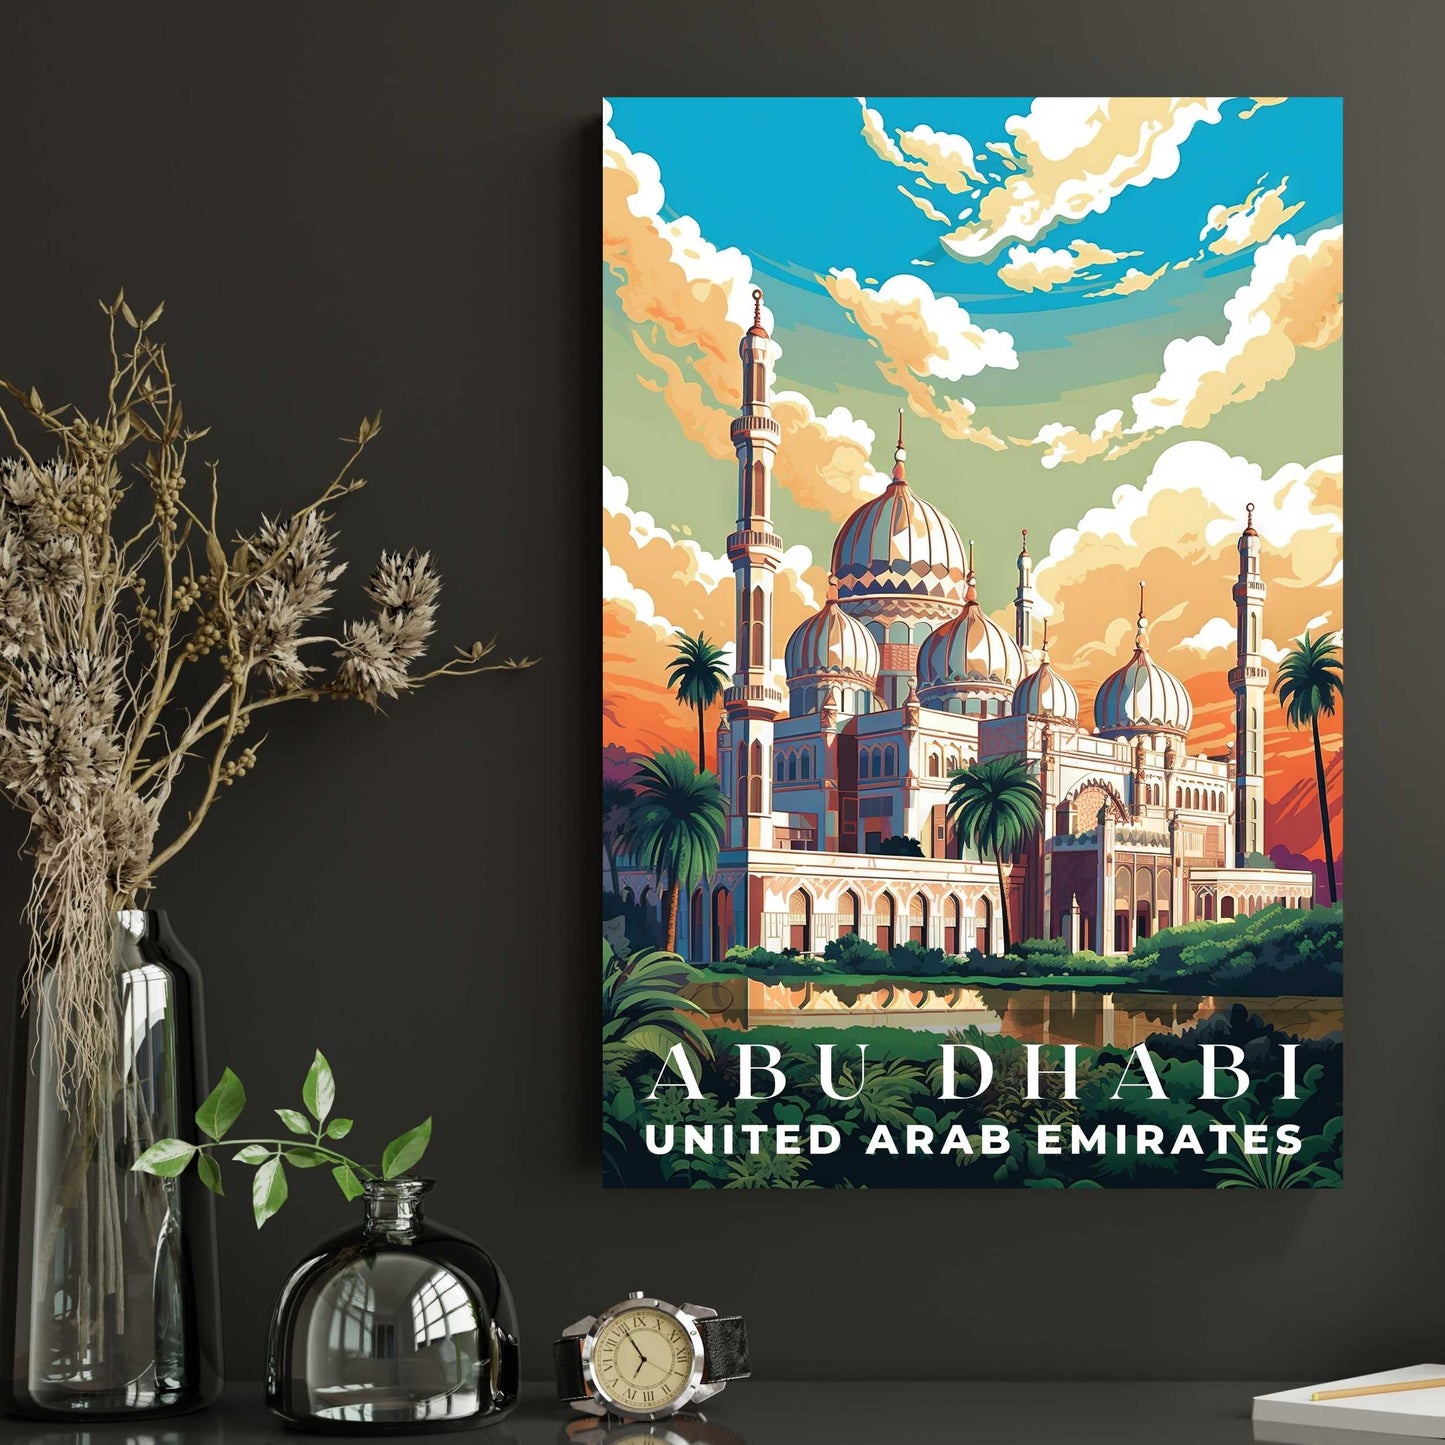 Abu Dhabi Poster | S01